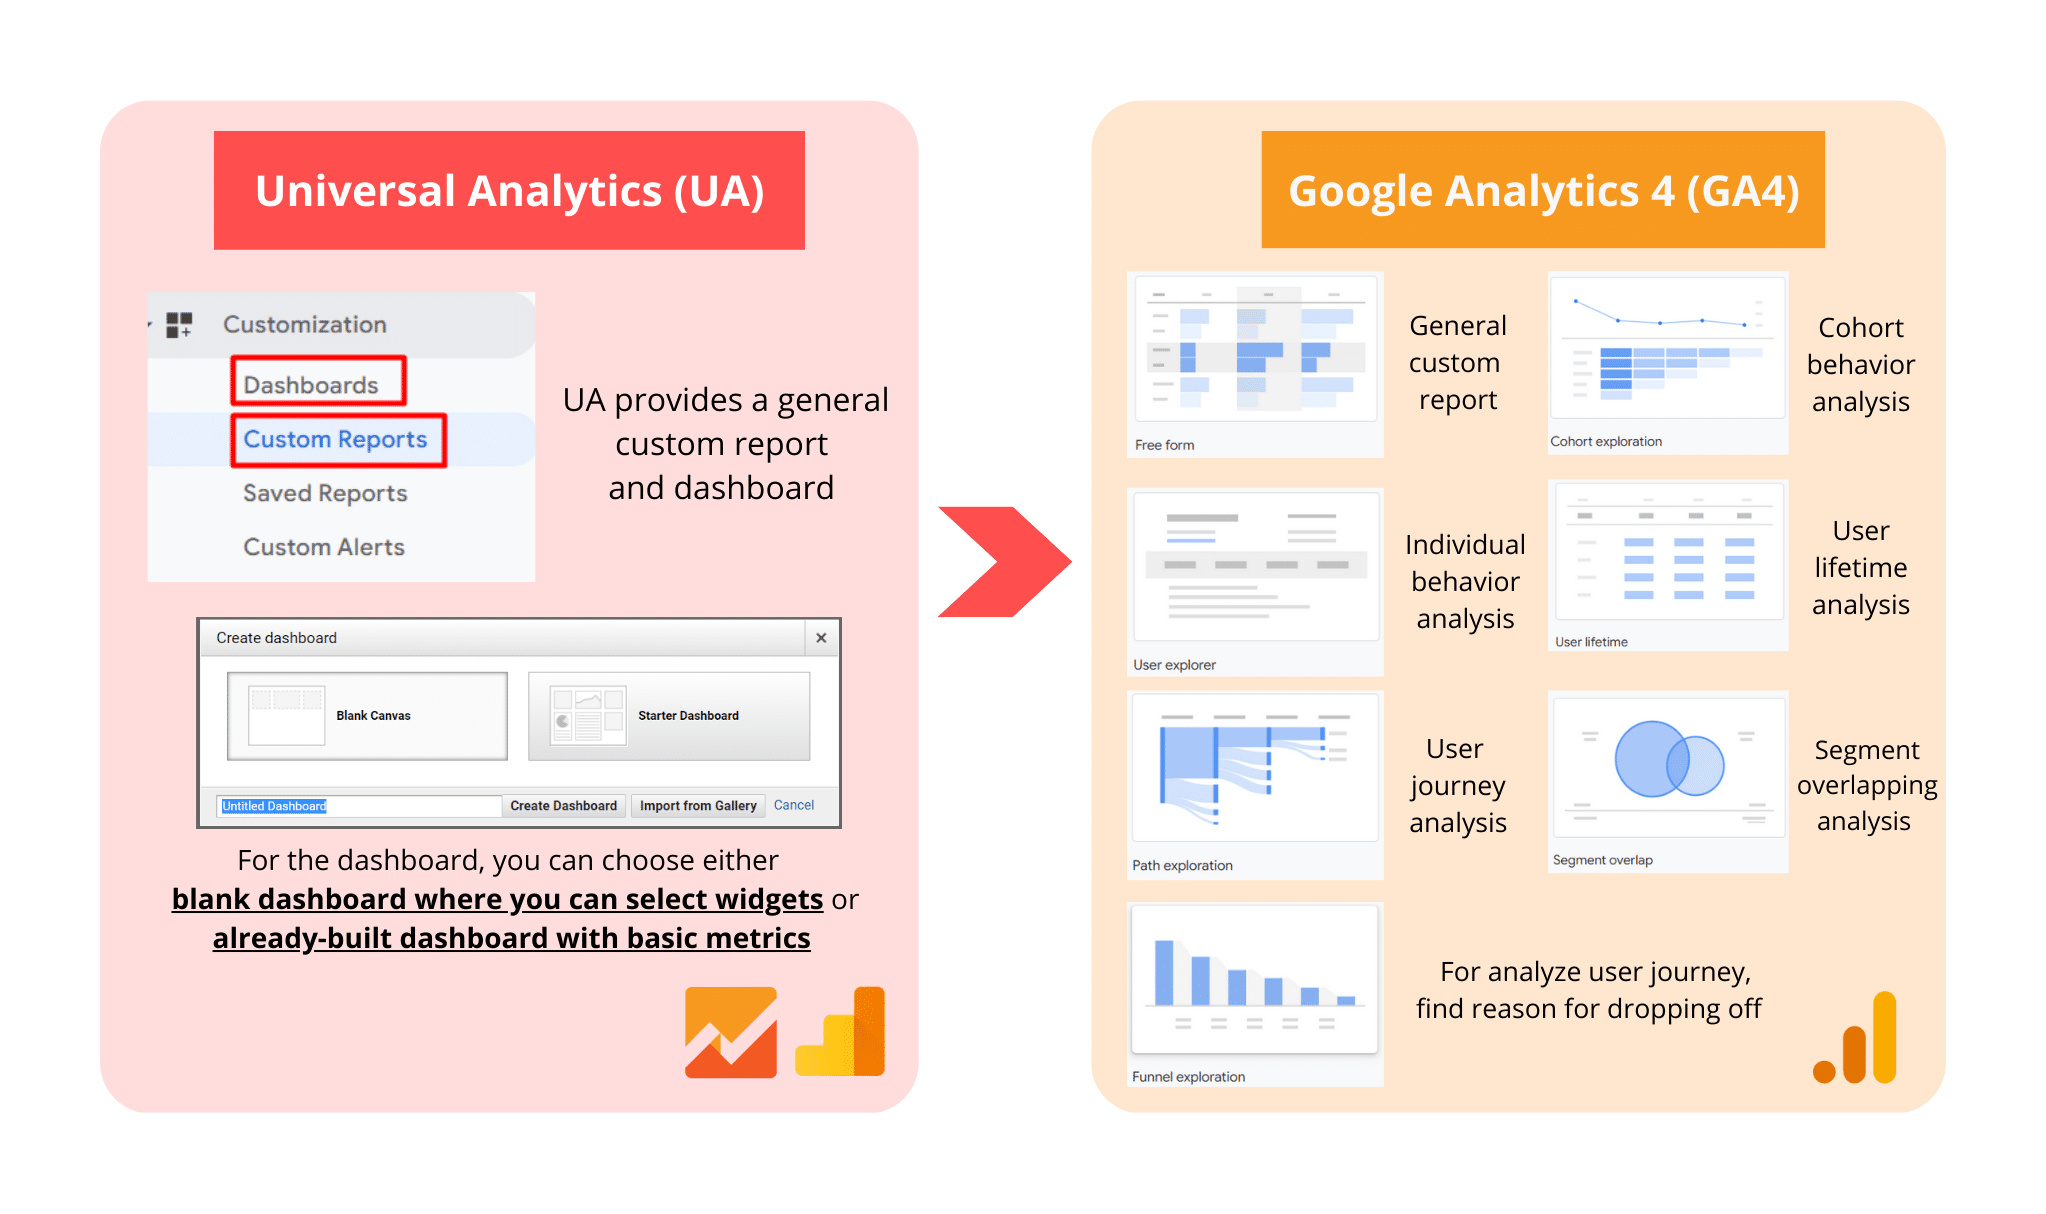 Wider range of custom reporting from Universal Analytics to Google Analytics 4.